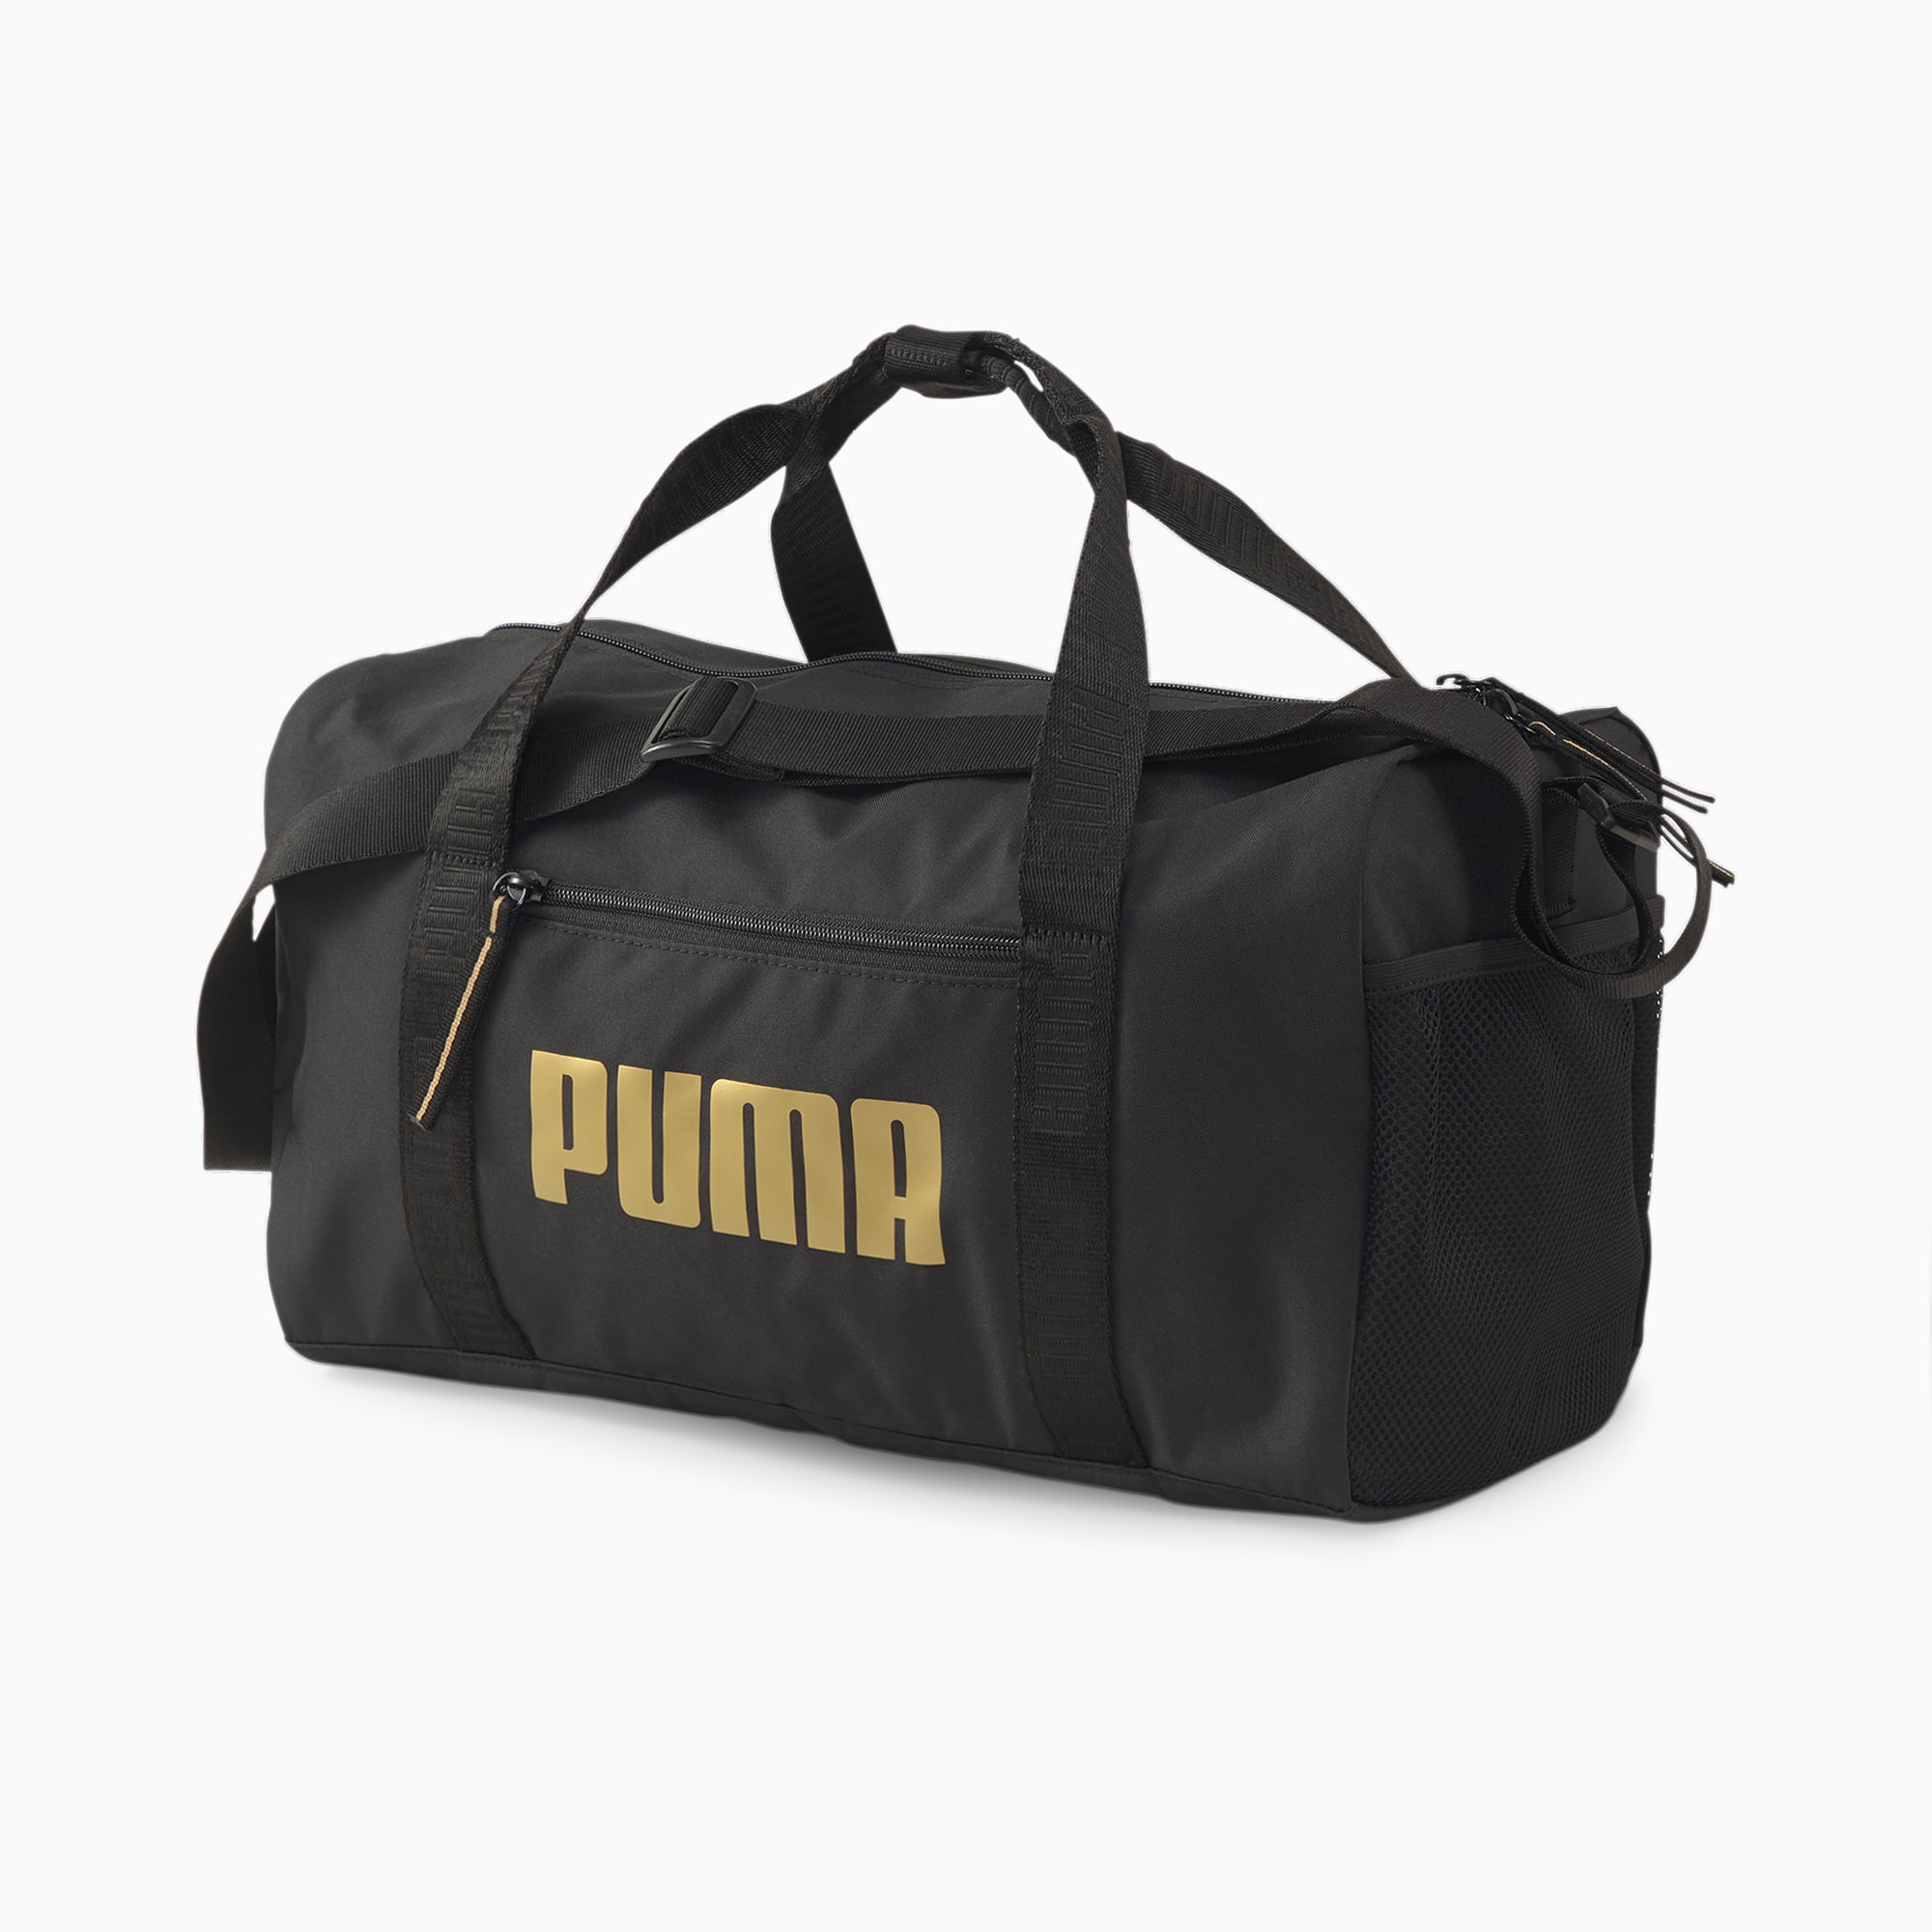 puma bags for women